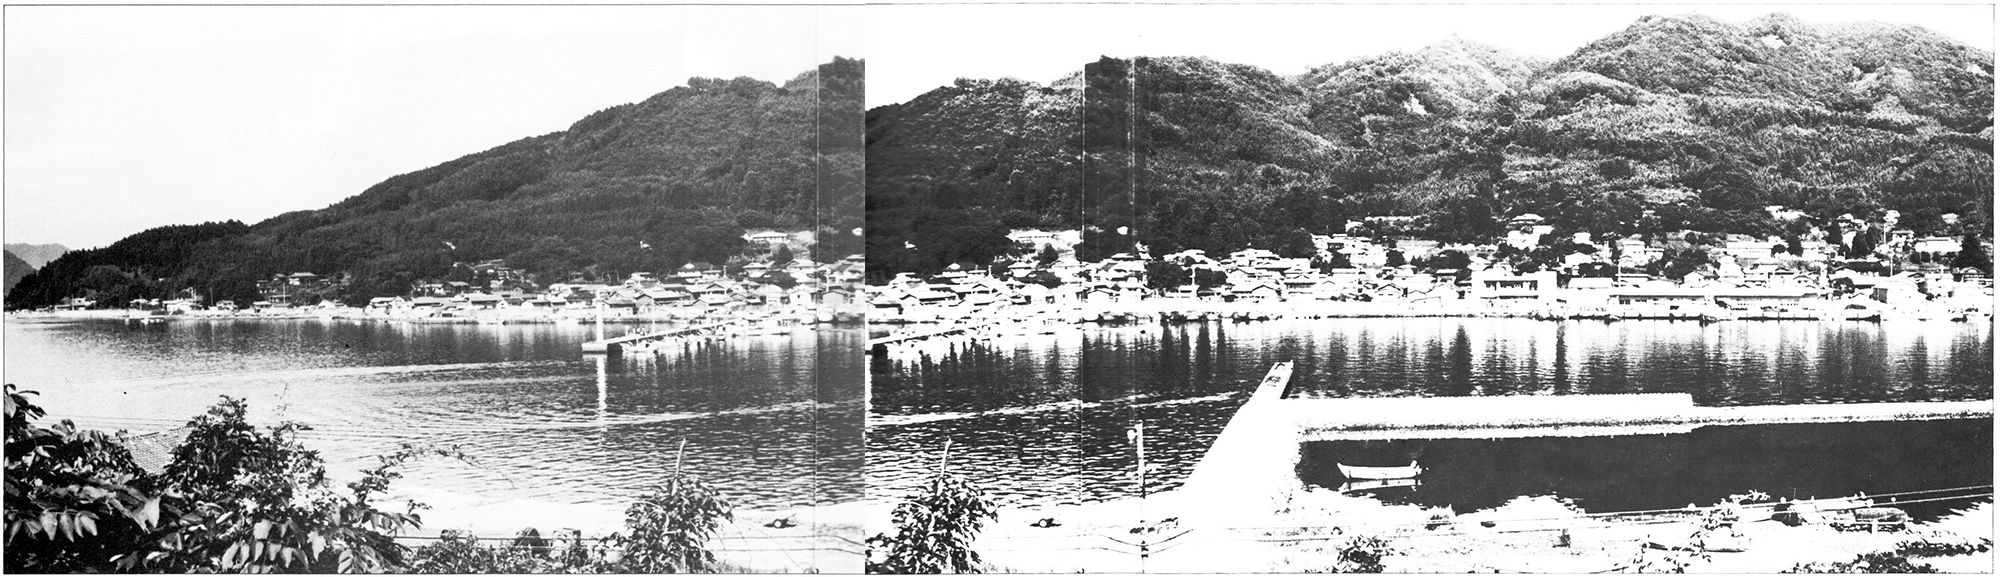 巡航船が運行している大浦地区、山田、大浦の写真